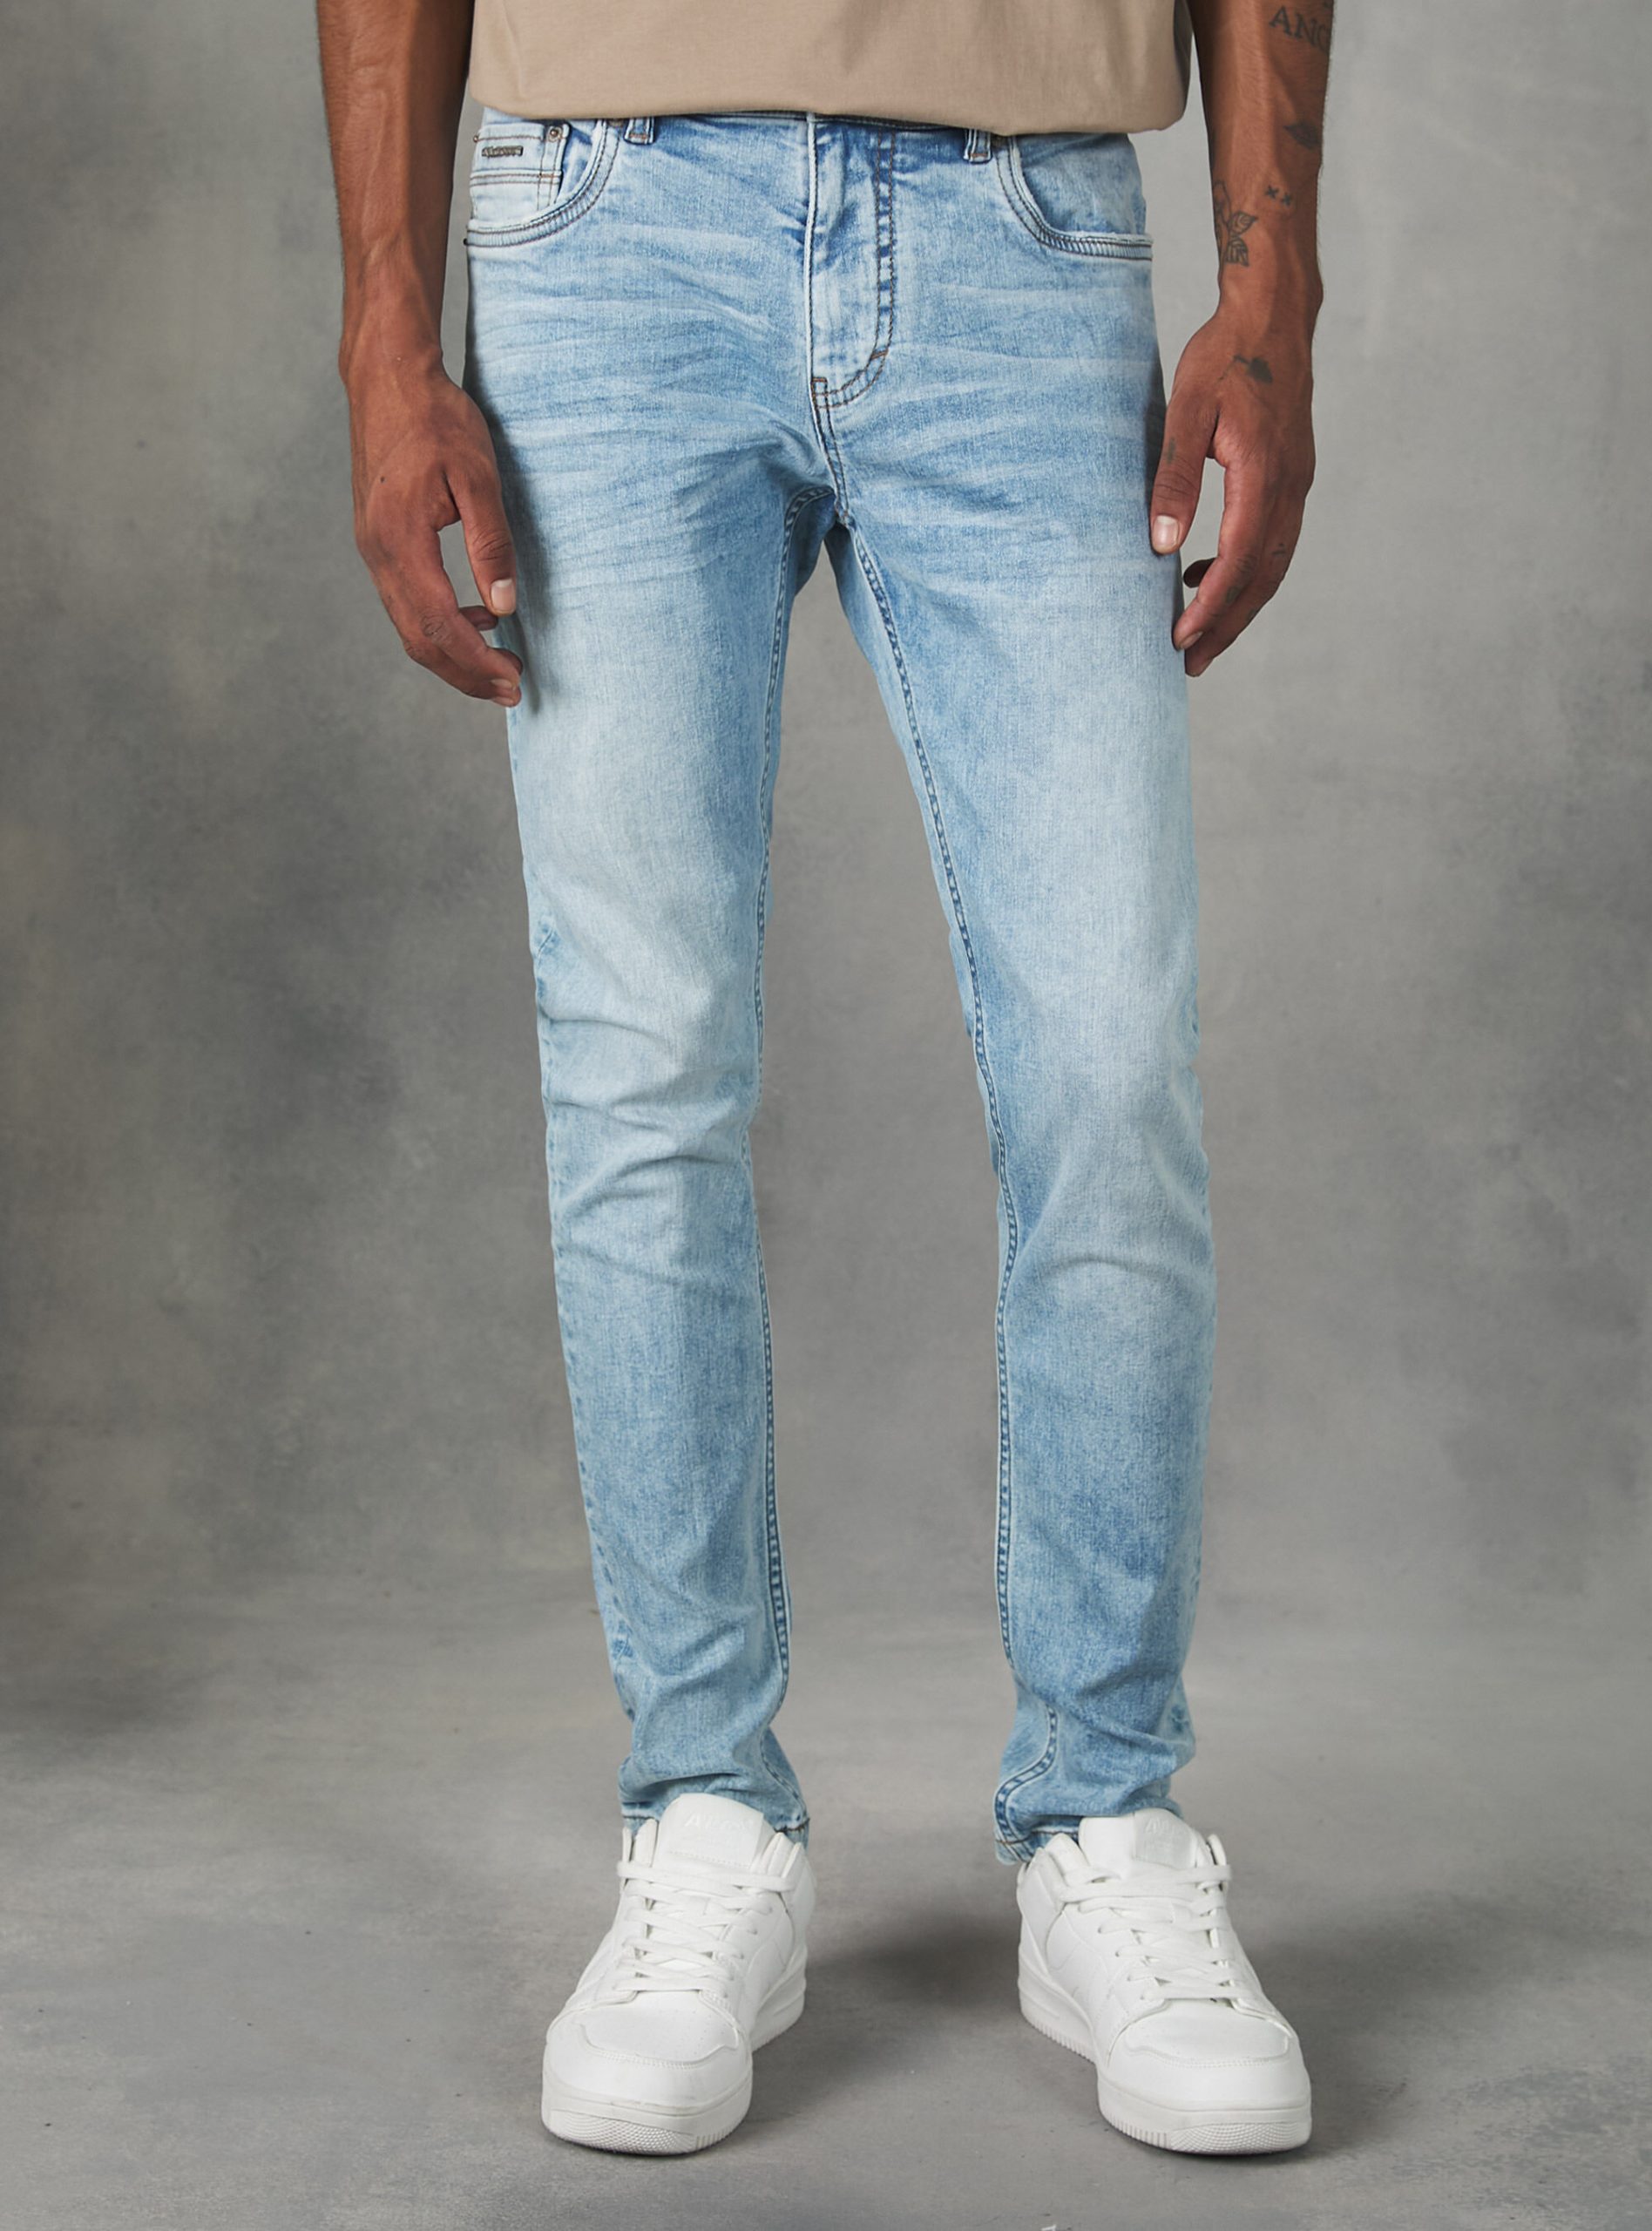 D006 Azure Jeans Männer Super Skinny Jeans In Stretch Denim Online Alcott – 2